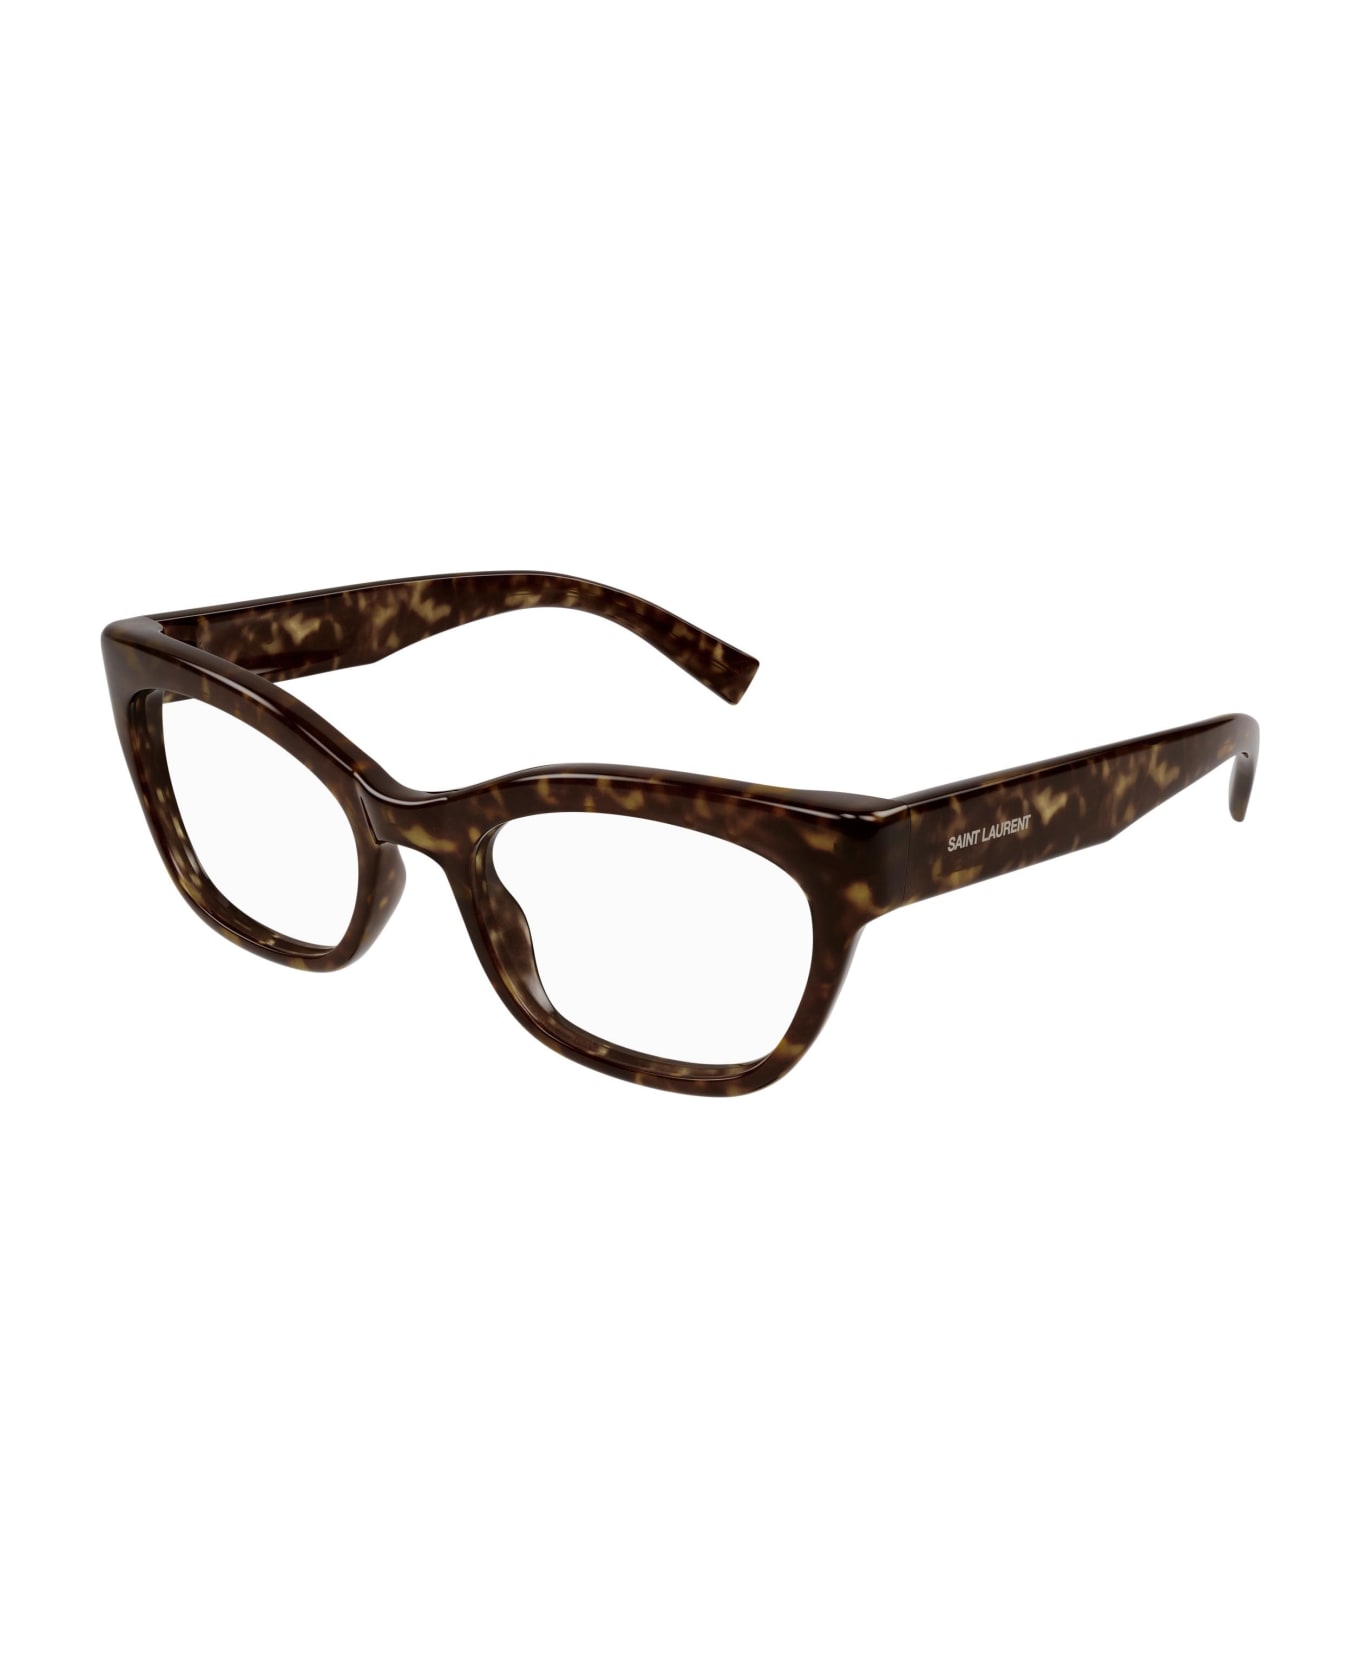 Saint Laurent Eyewear Glasses - Havana アイウェア